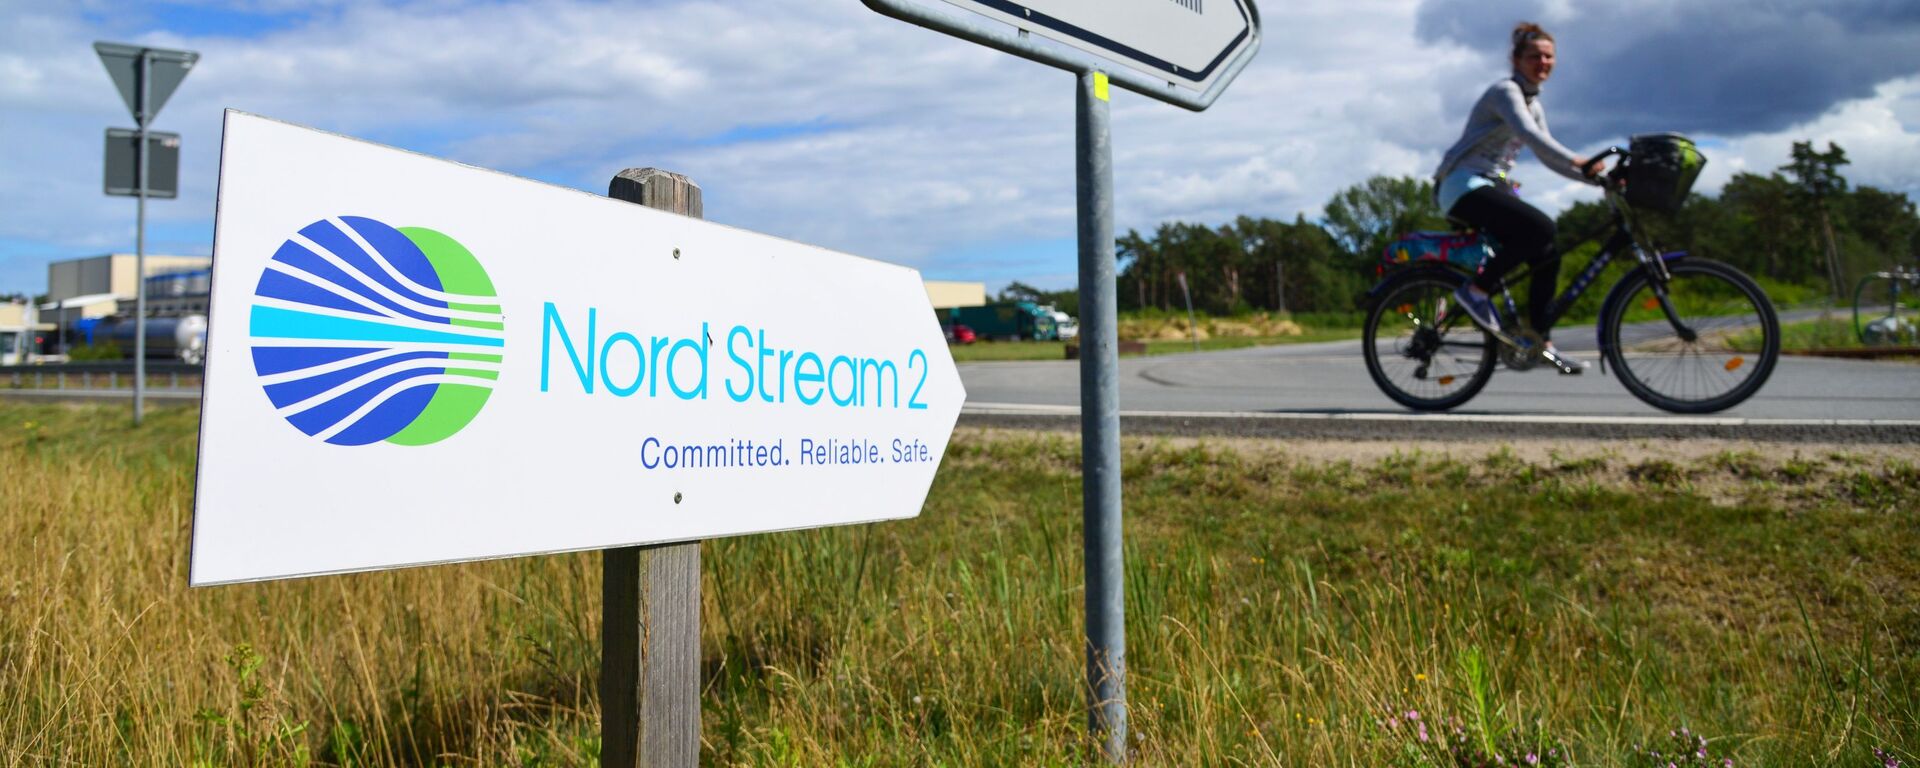 Una señal de Nord Stream 2 en Alemania - Sputnik Mundo, 1920, 05.02.2021